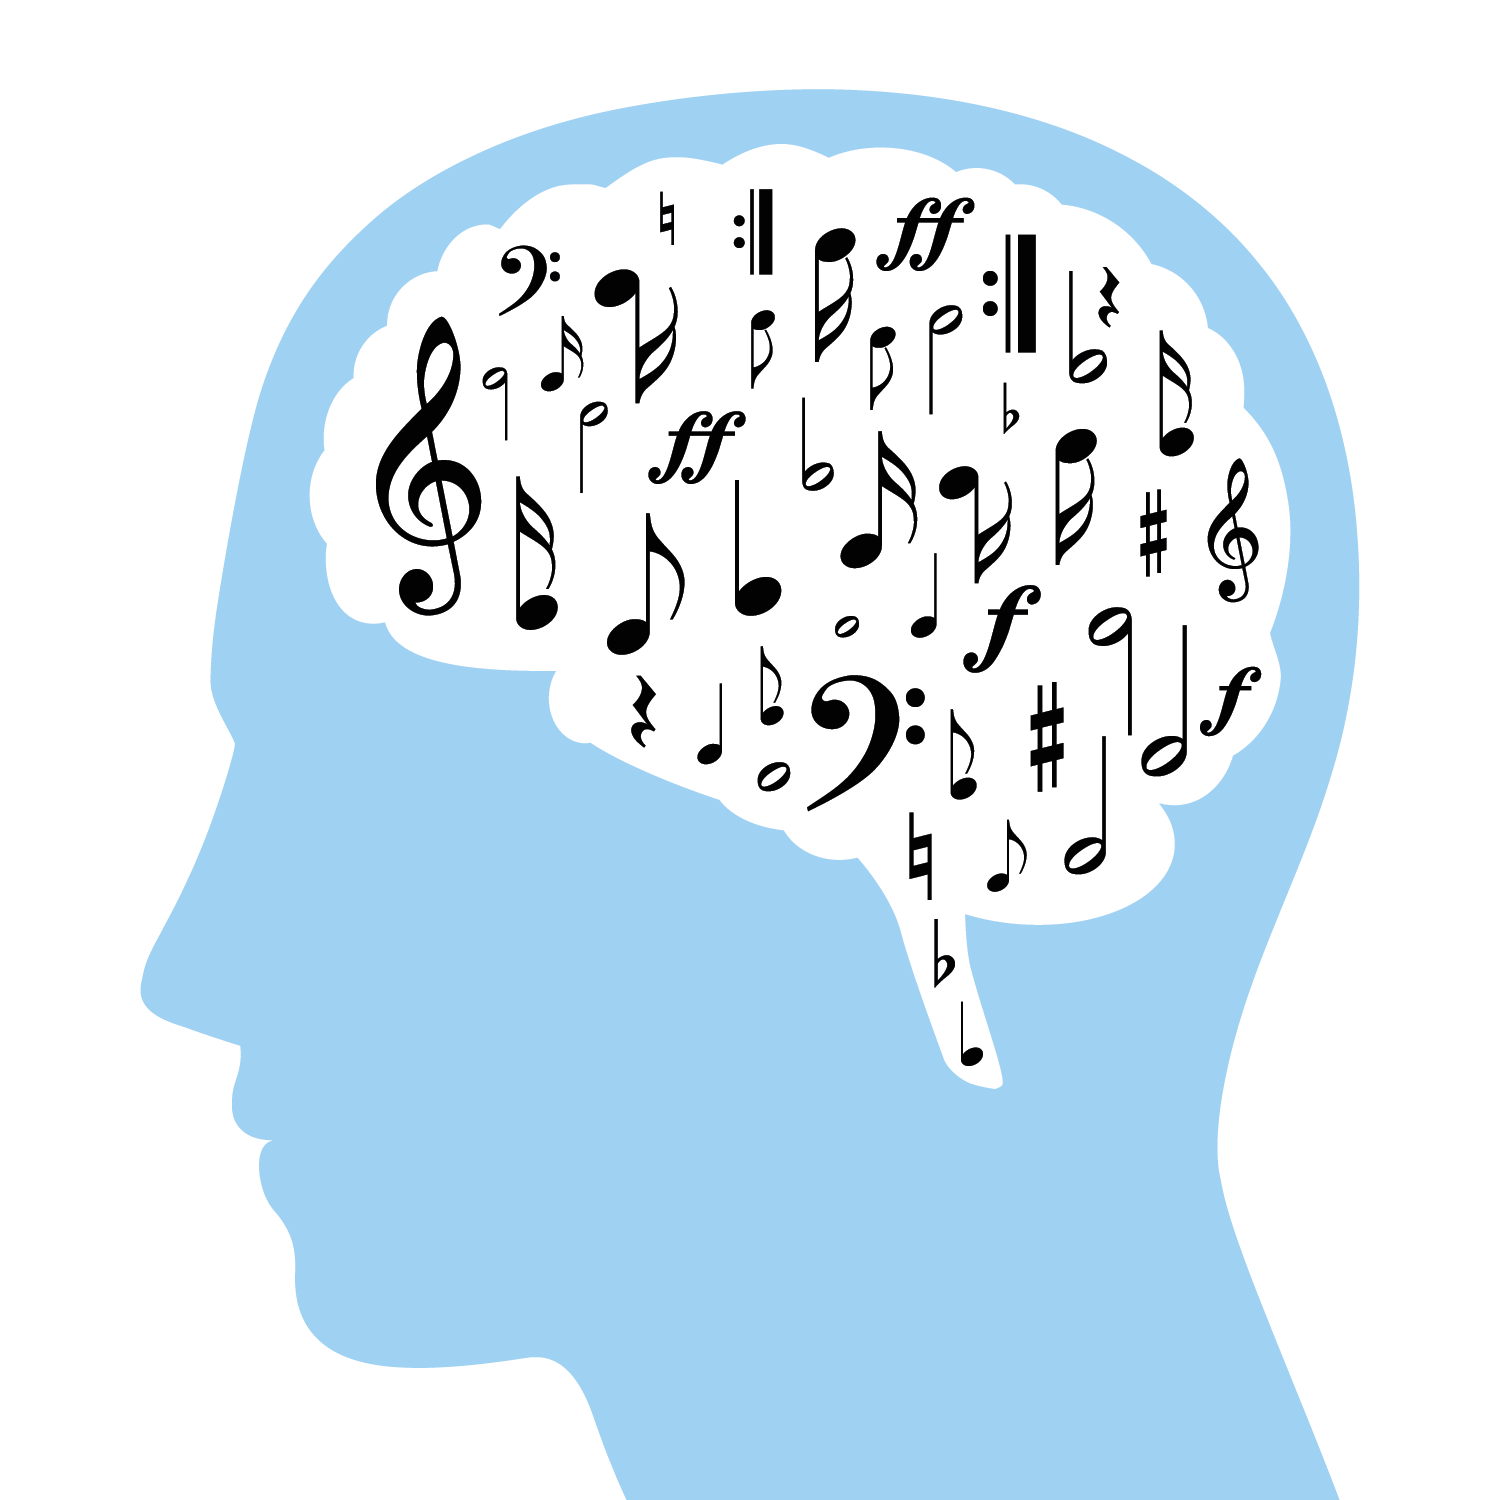 Ilustração. Silhueta azul-clara de uma cabeça humana de perfil dentro da qual há um balão de fala em fundo branco com diversas notas musicais em preto.